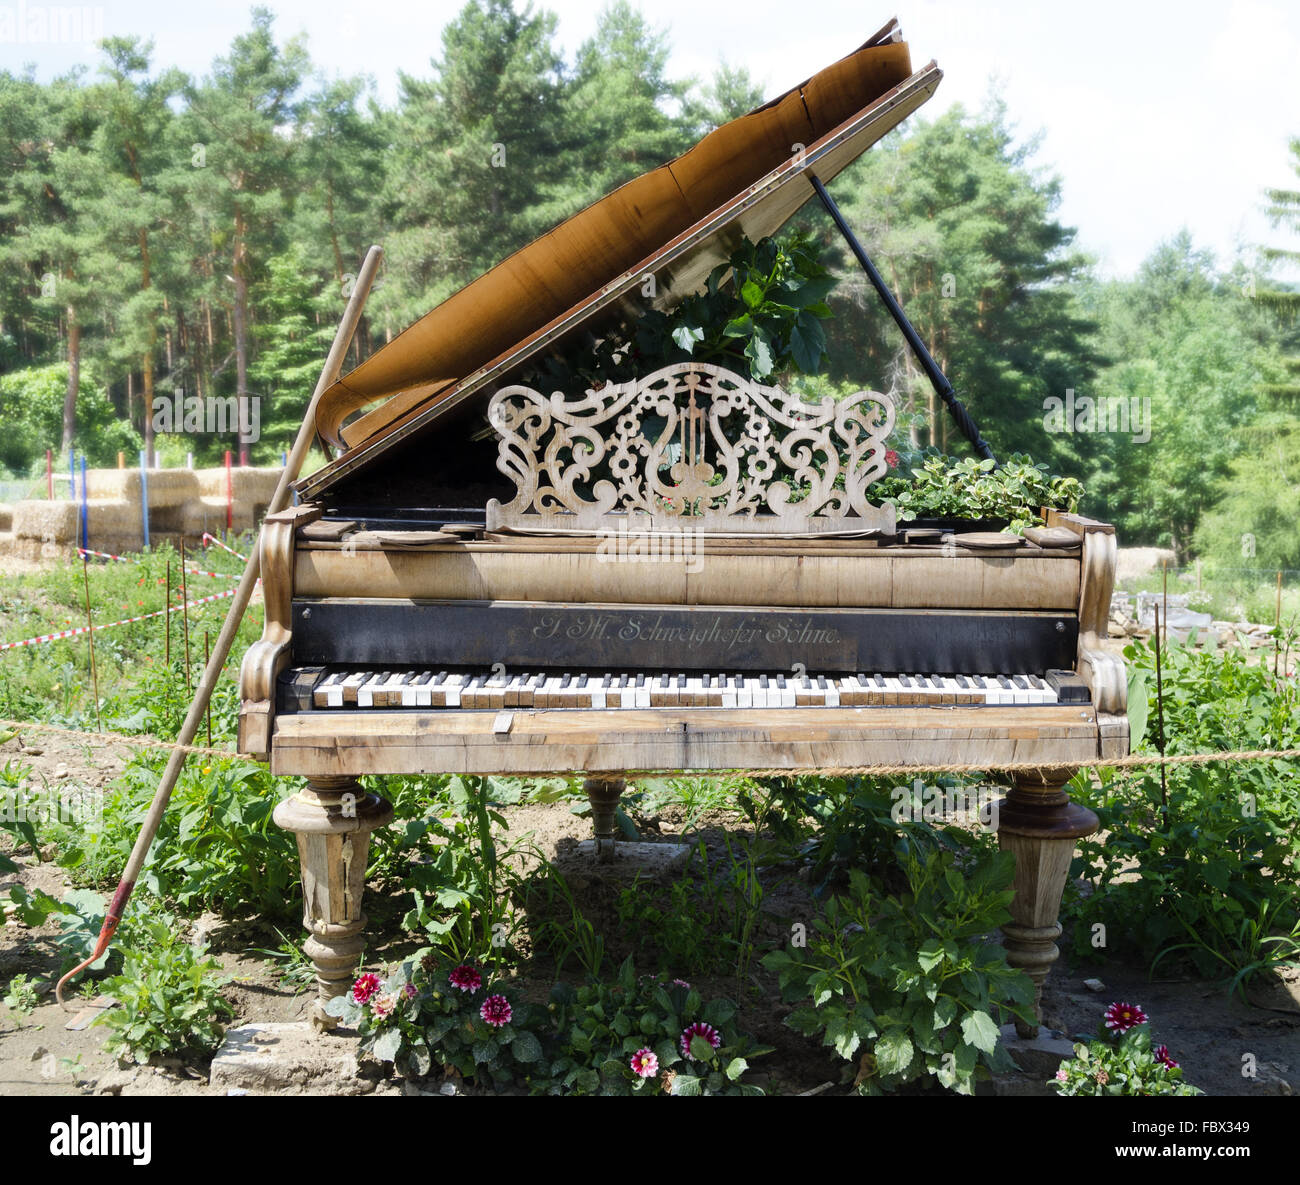 old desolate piano in a garden Stock Photo